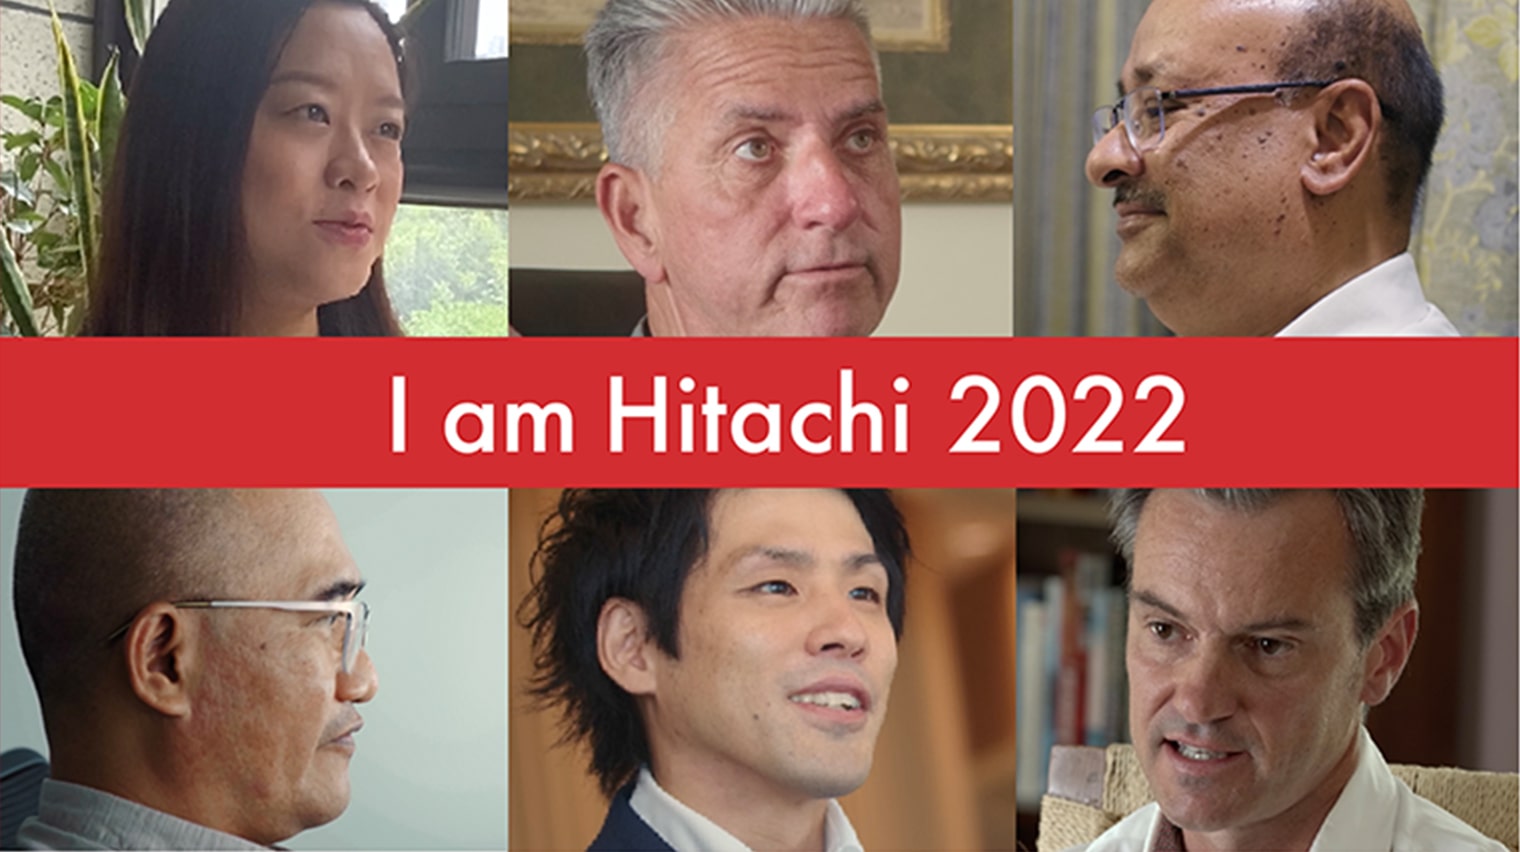 Hitachi Group Identity Movie - "I am Hitachi 2022" (English) - 日立